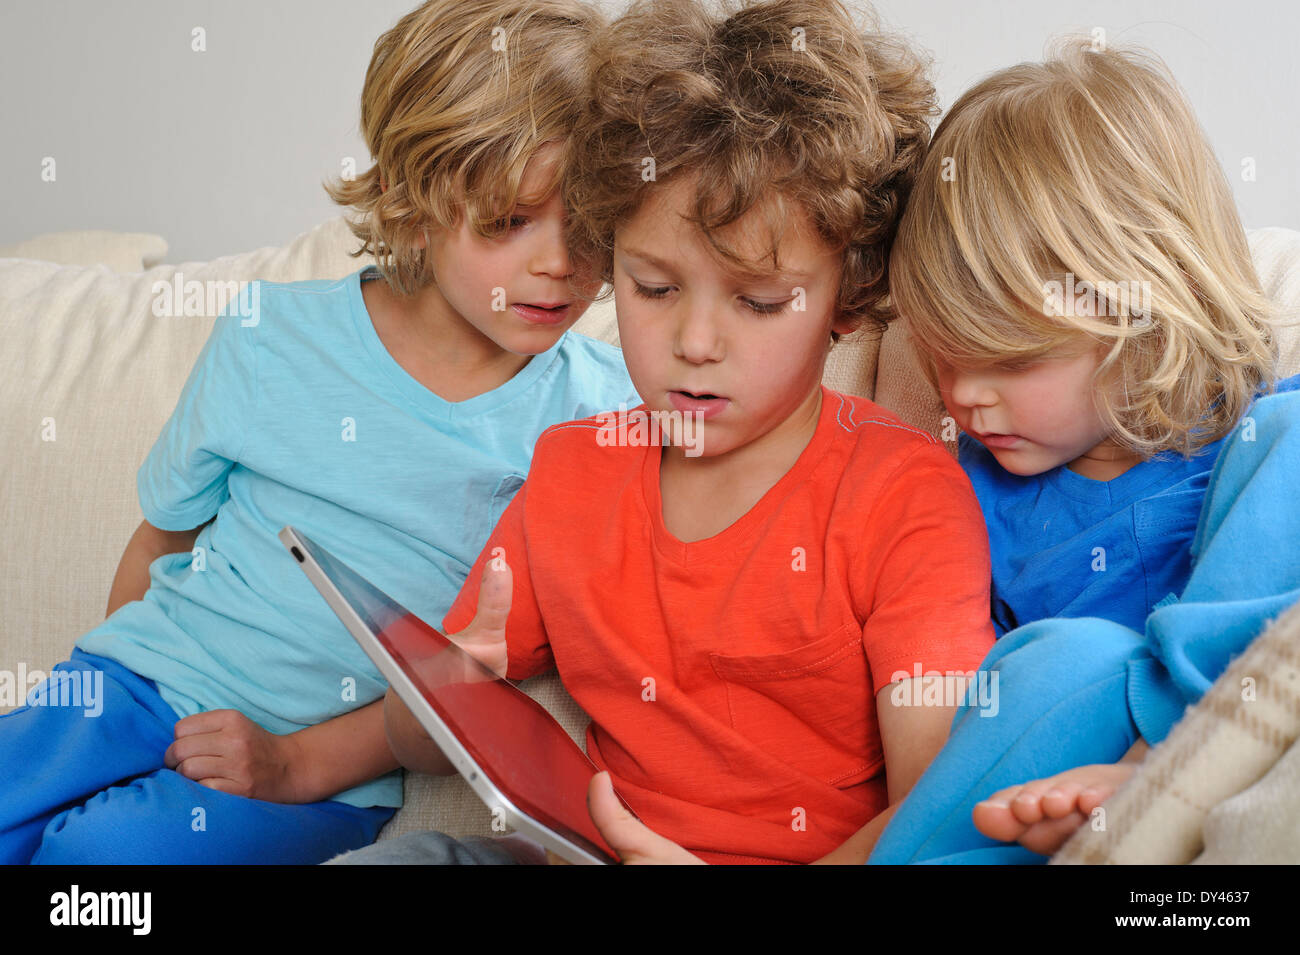 Un 8-9 ans est de jouer à un jeu sur un écran tactile Tablet. Ses jeunes frères sont à regarder attentivement chaque mouvement Banque D'Images